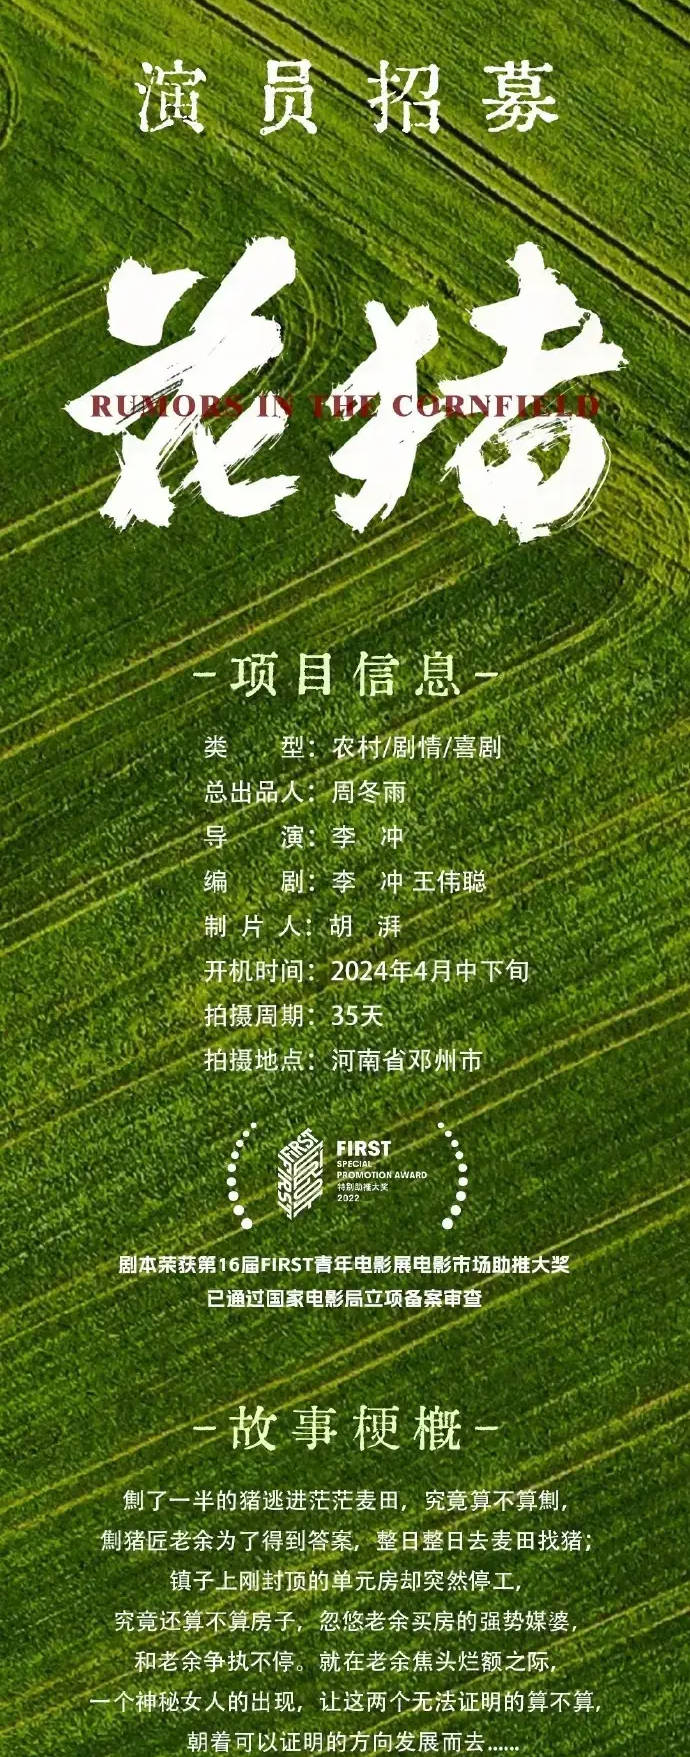 周冬雨首次挑战总出品人，新喜剧电影《花猪》将探索中国乡村魅力